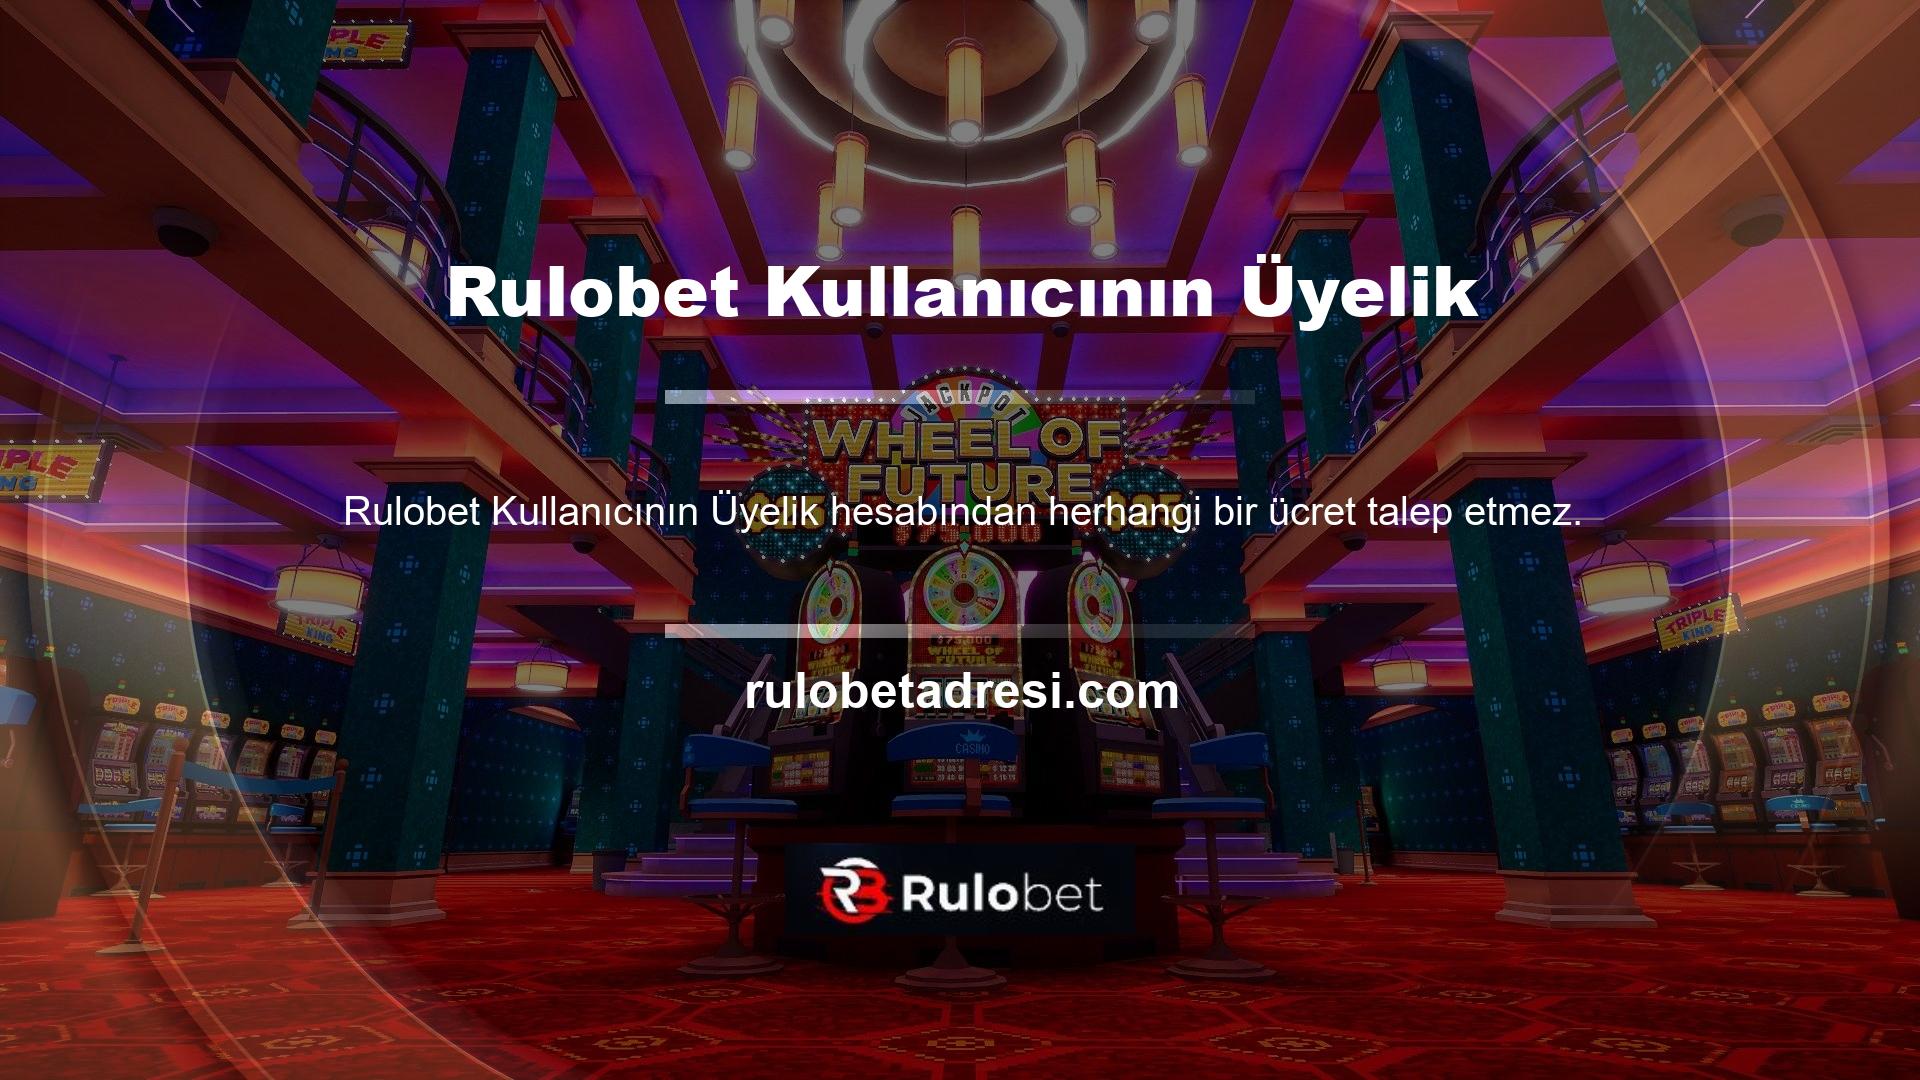 Canlı bahis veya canlı casino ile ilgili Rulobet Kullanıcının Üyelik nereden sorabilirim?
Rulobet Canlı Casino
Türkiye'nin en popüler çevrimiçi casino platformlarından biri olan Rulobet, giriş adresini sık sık değiştiriyor